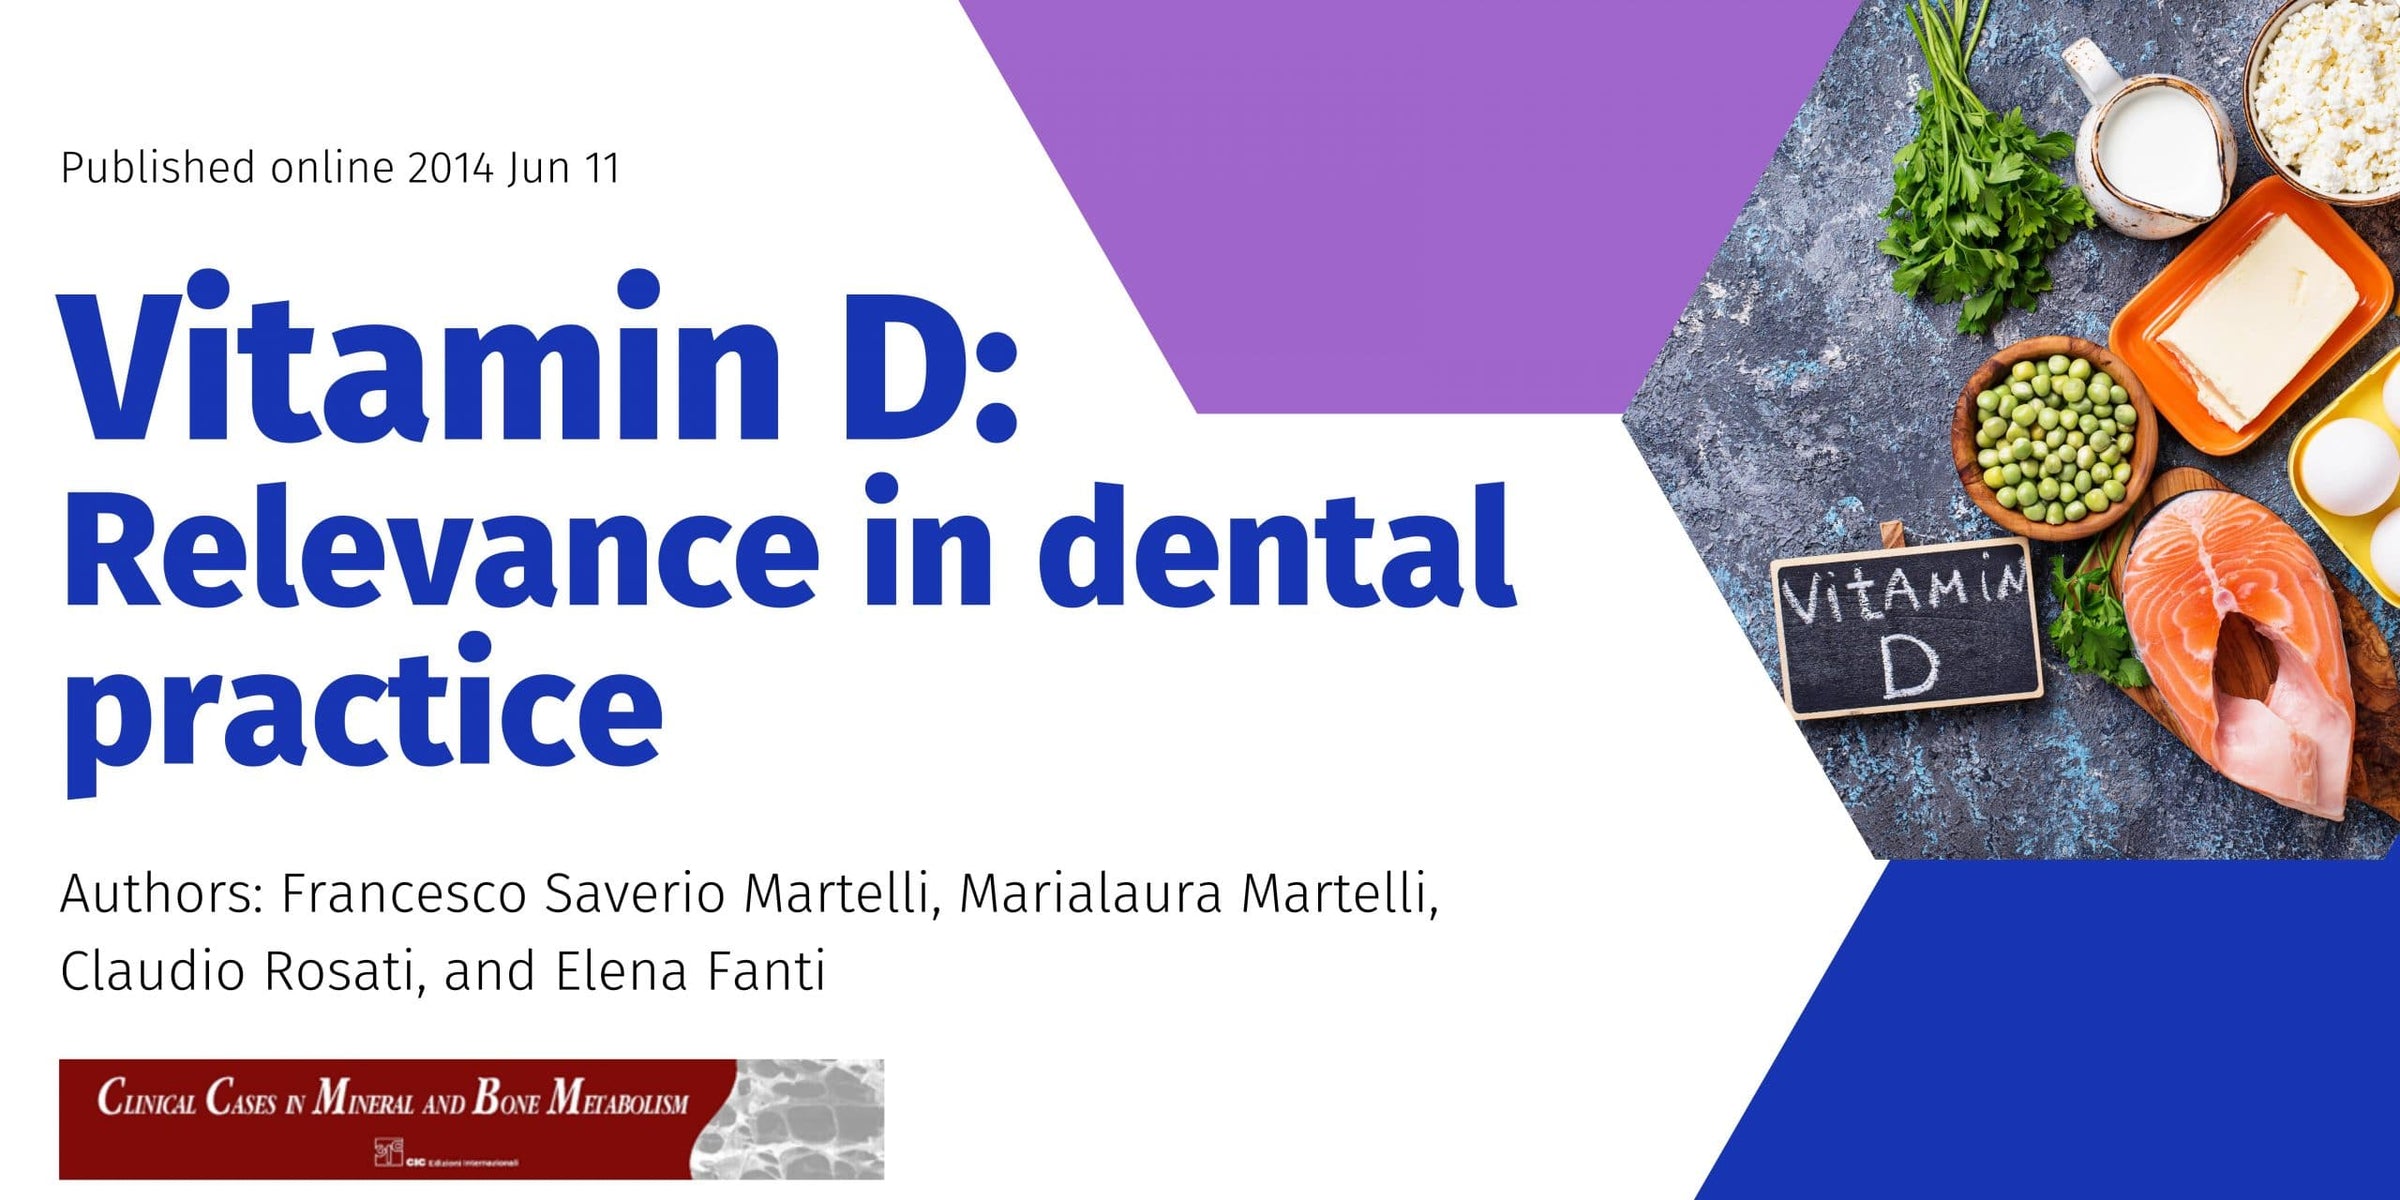 Vitamin D: Relevance in dental practice Image